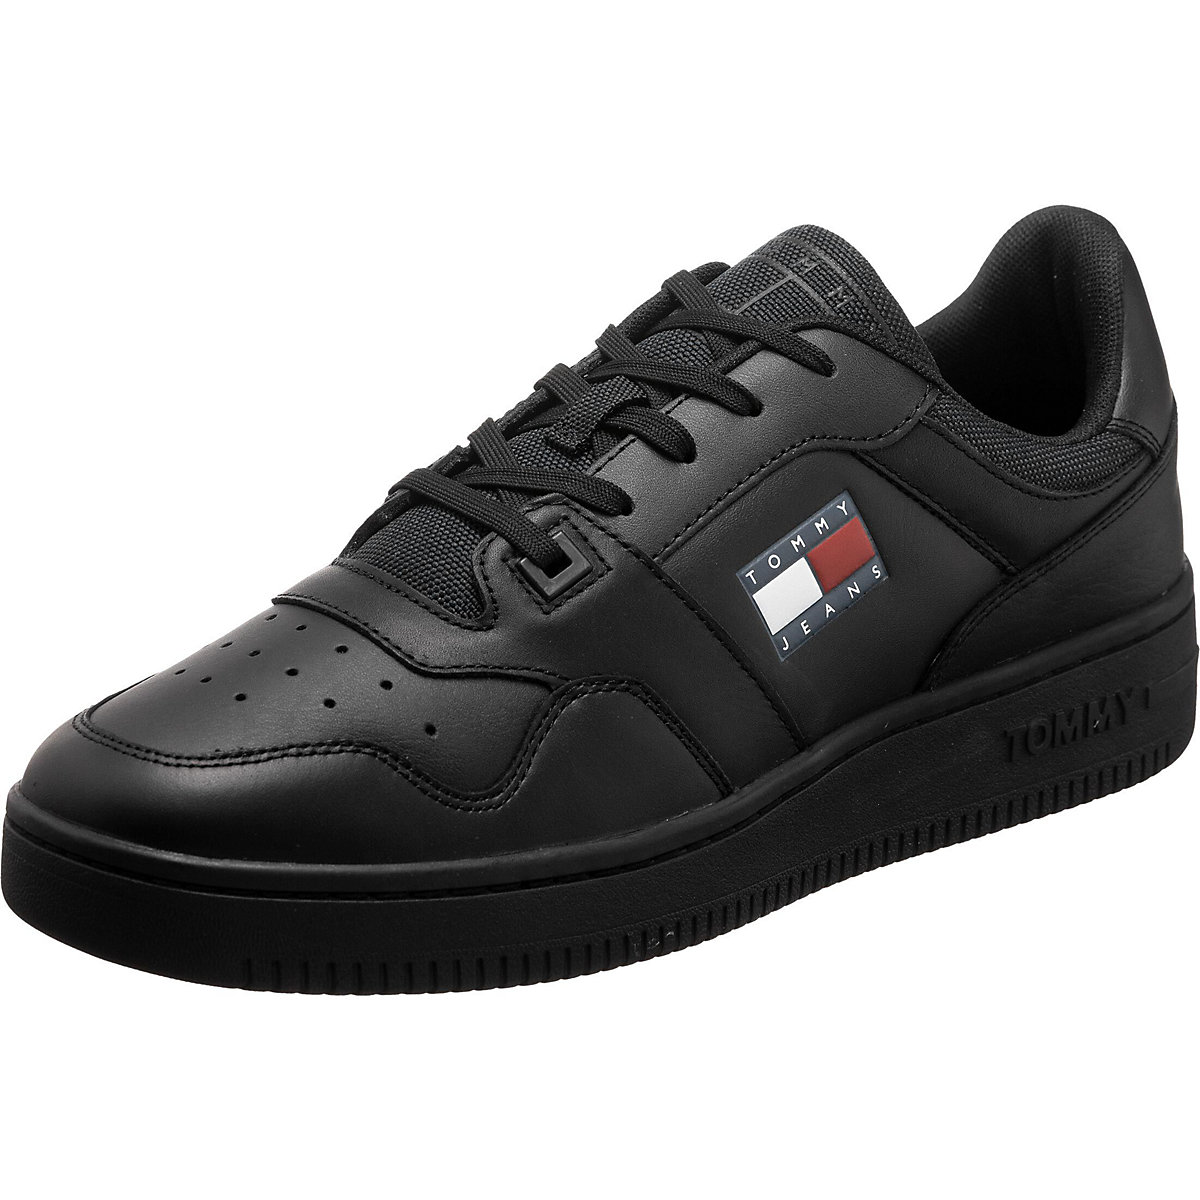 TOMMY HILFIGER Tommy Jeans Schuhe Retro Basket Zion Sneakers Low schwarz